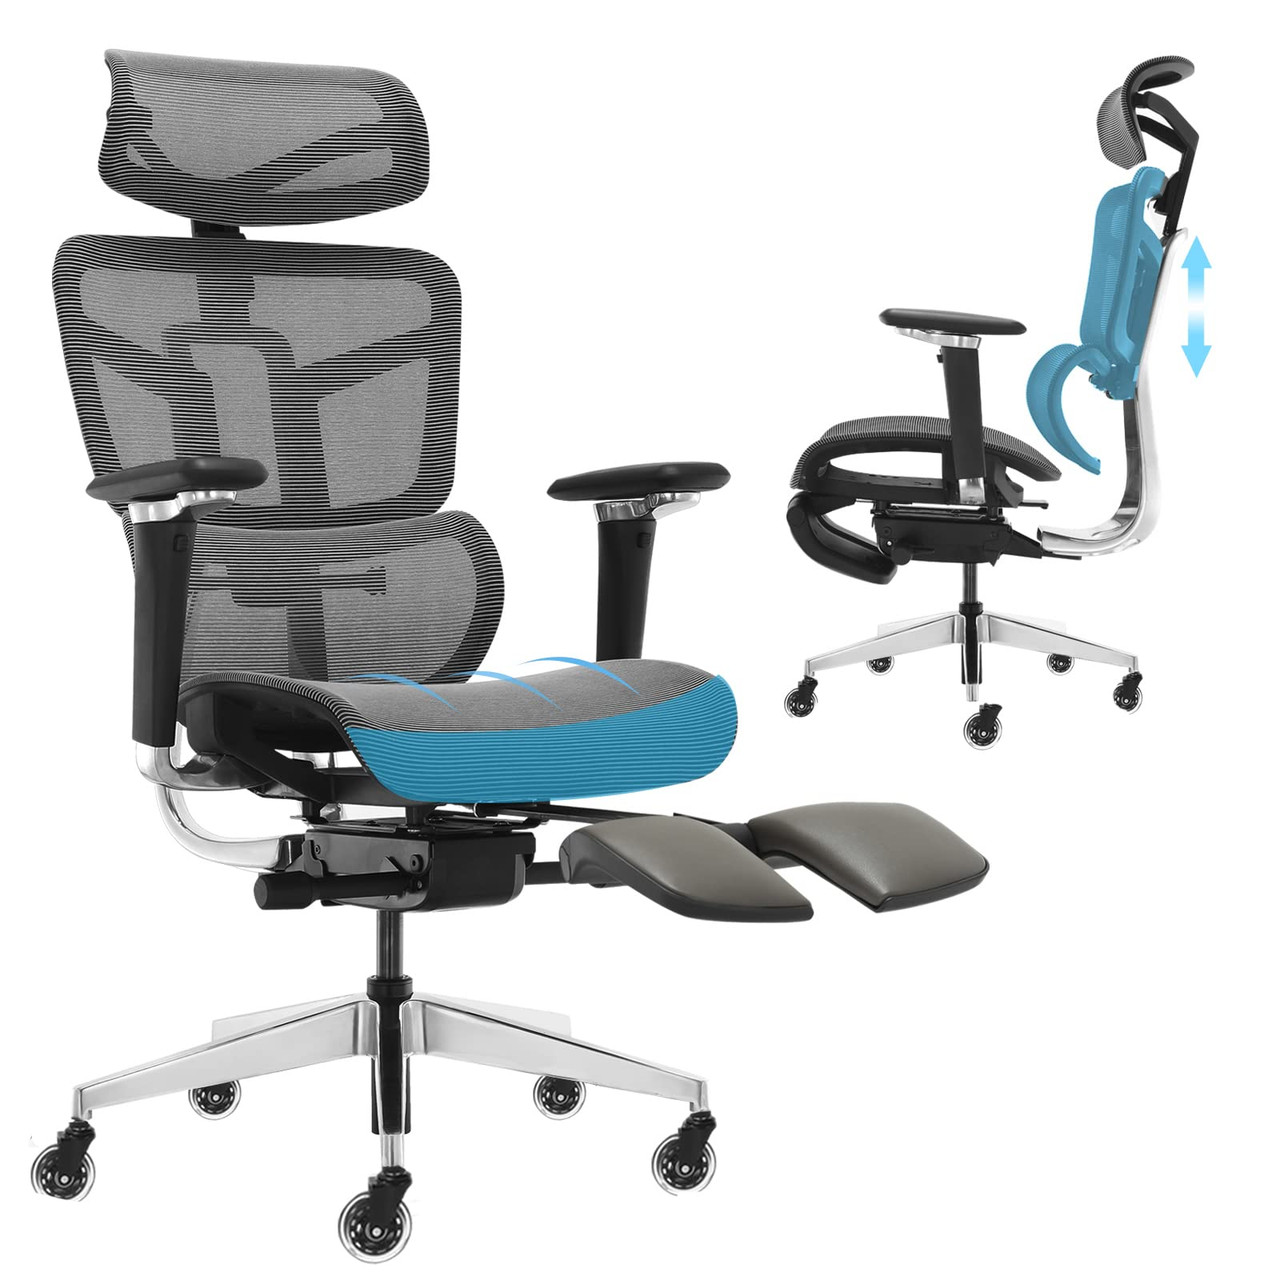  SAMOFU Ergonomic Office Chair, Backrest Height